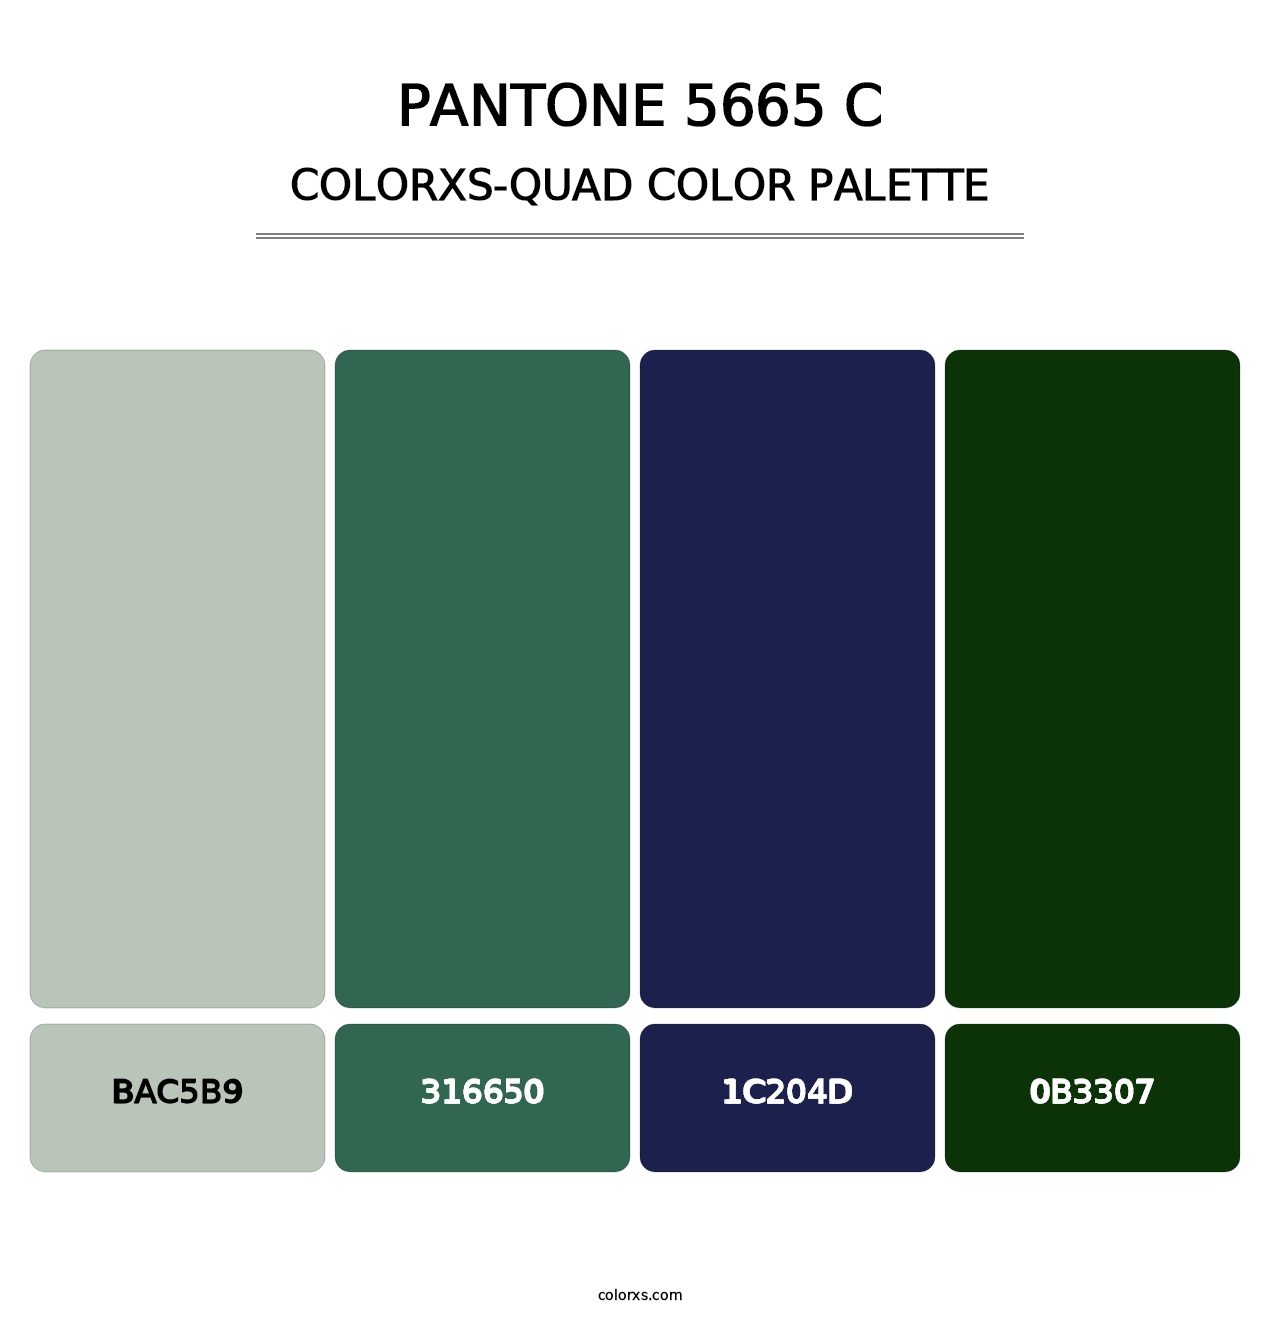 PANTONE 5665 C - Colorxs Quad Palette